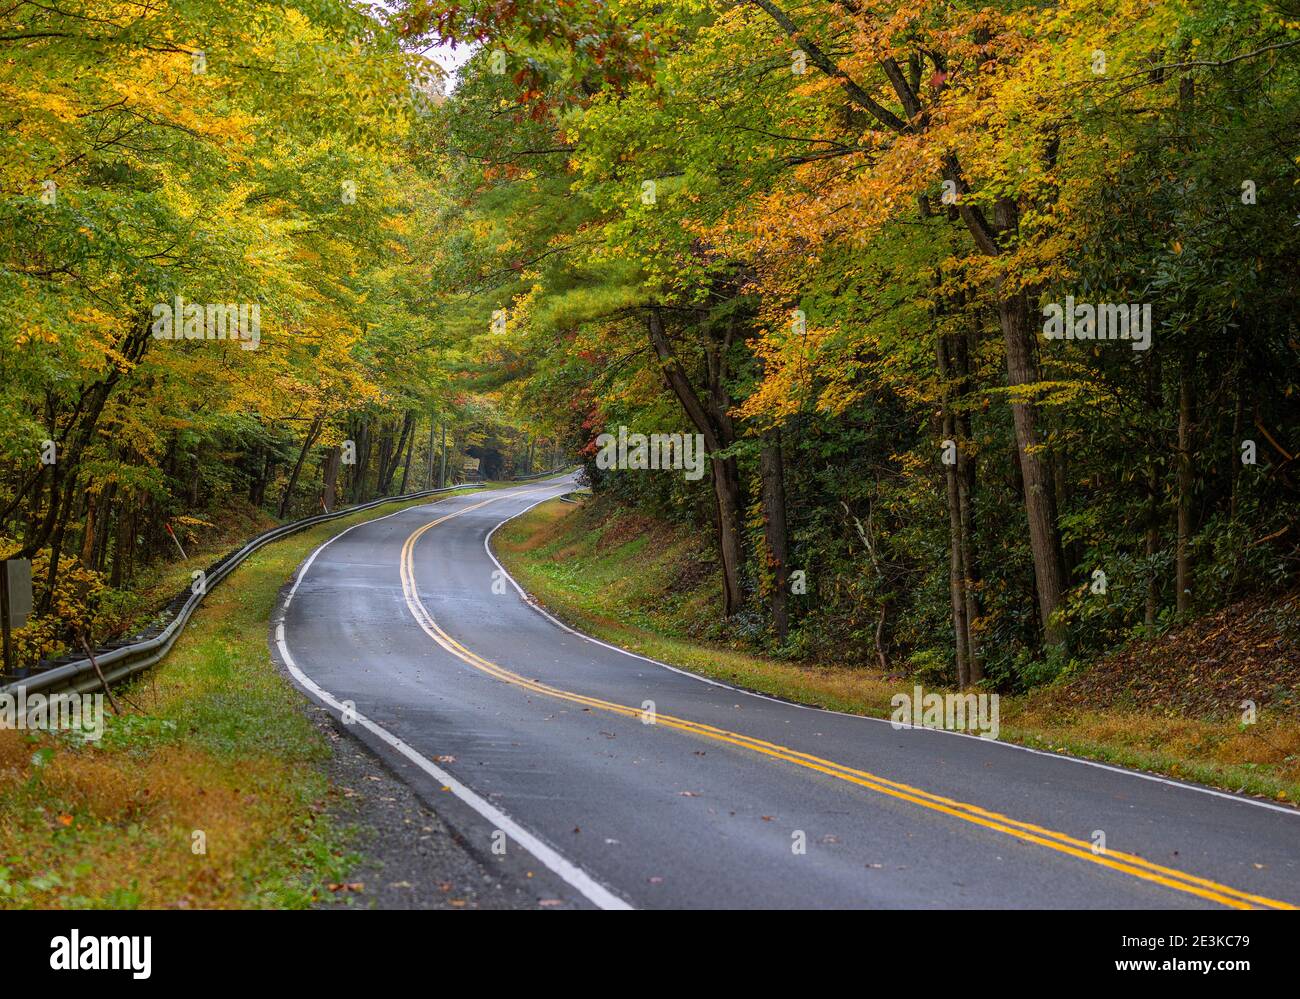 Los árboles de otoño bordean ambos lados de la carretera que serpentea por las montañas Apalaches de Virginia. Foto de stock